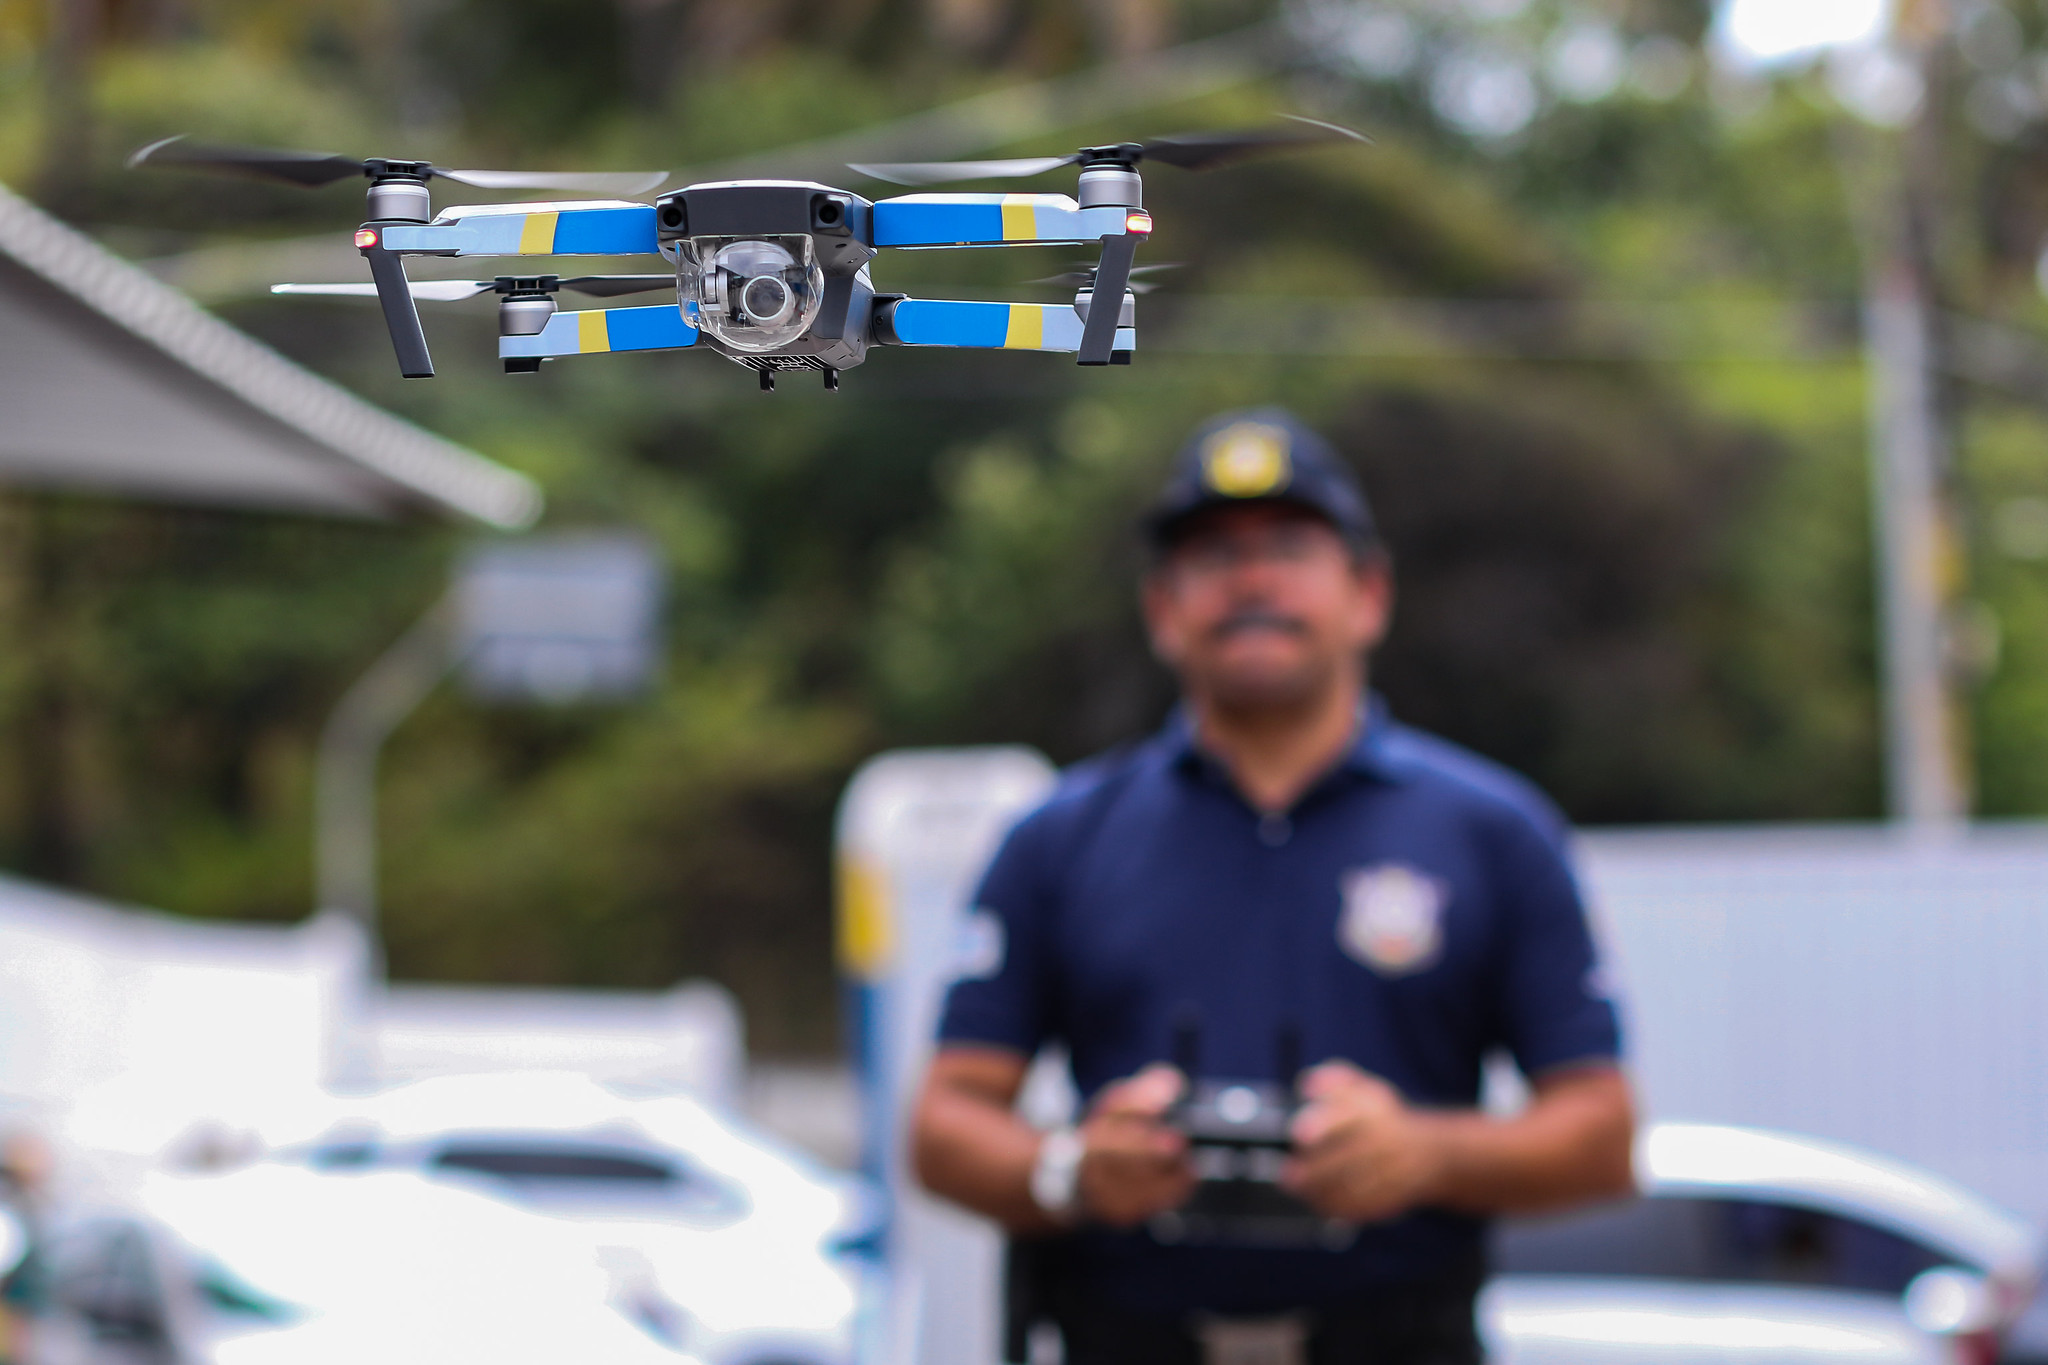 #PraCegoVer: Enxerga-se em primeiro plano um drone, aparelho com quatro hélices e câmera. Ao fundo, desfocado, vê-se um guarda civil municipal pilotando-o com o auxílio de um controle com antenas.